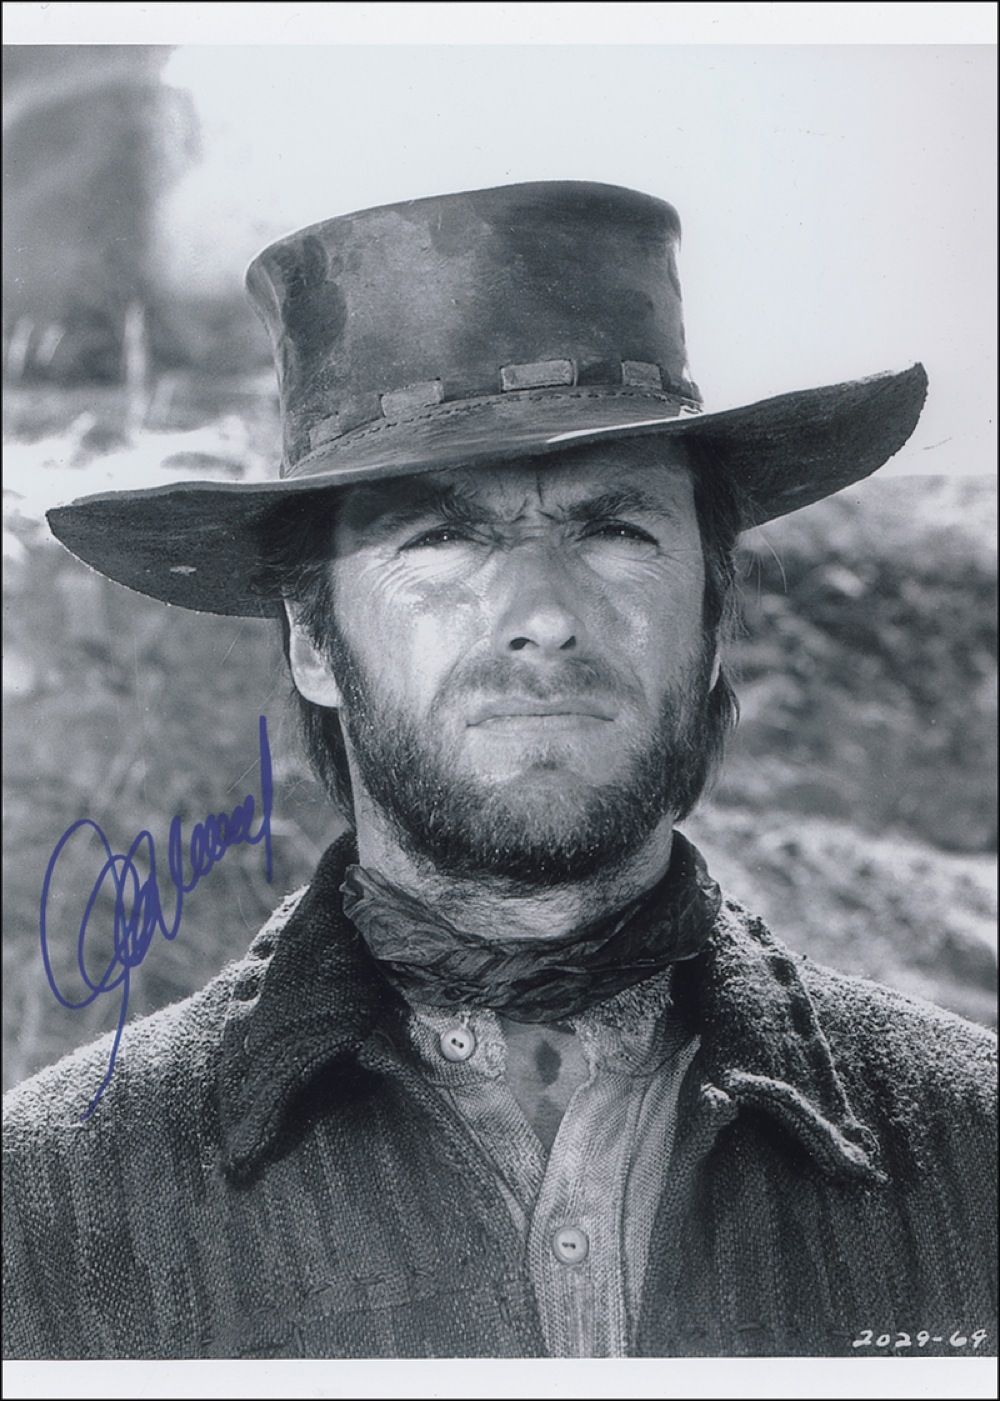 Lot #1075 Clint Eastwood